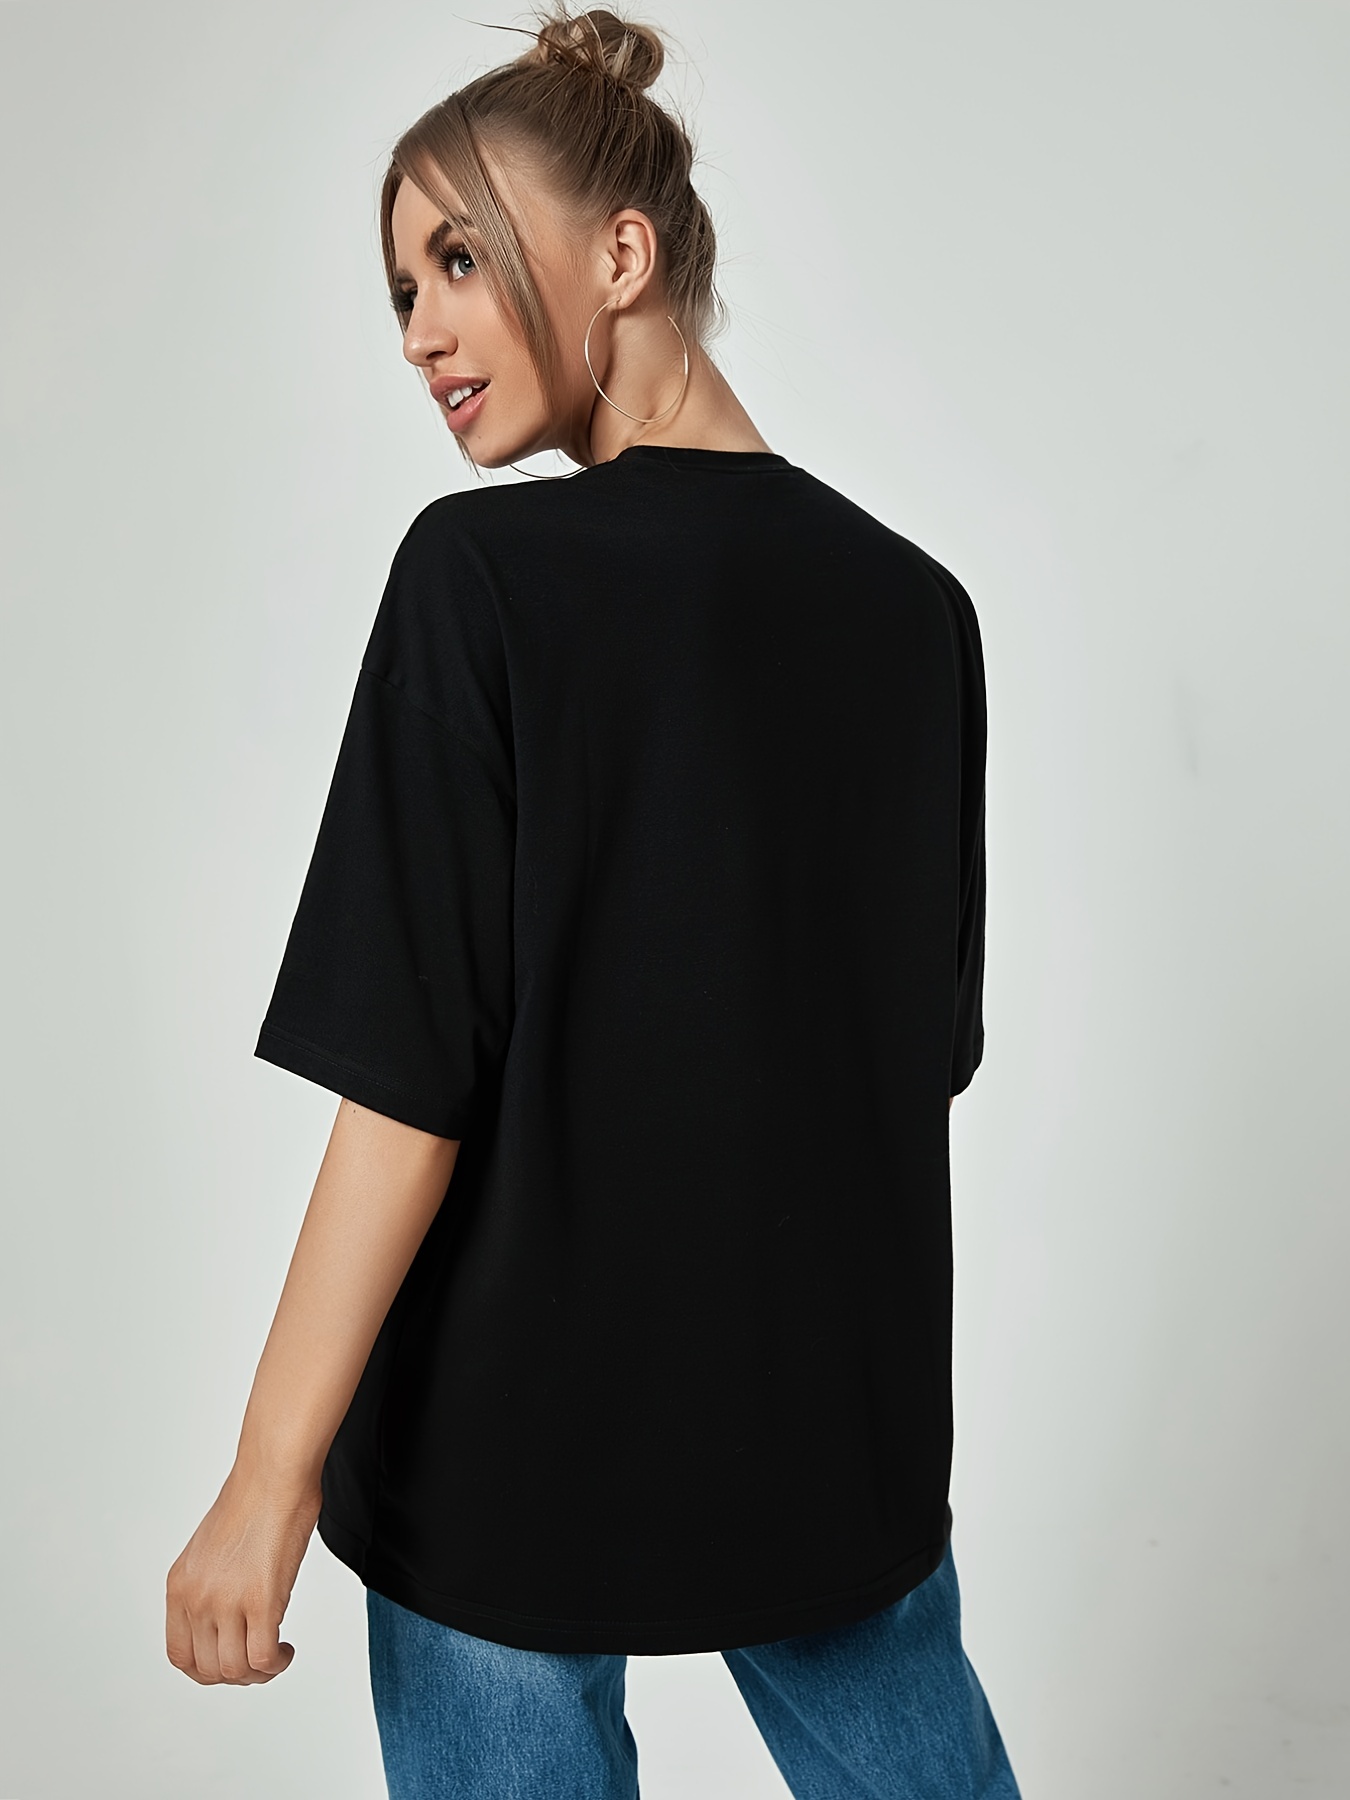 Women Fashion Printing O-Neck Short T-Shirt Loose Blouse Top Shirt Basics T  Shirt Women Shirts Women Casual 